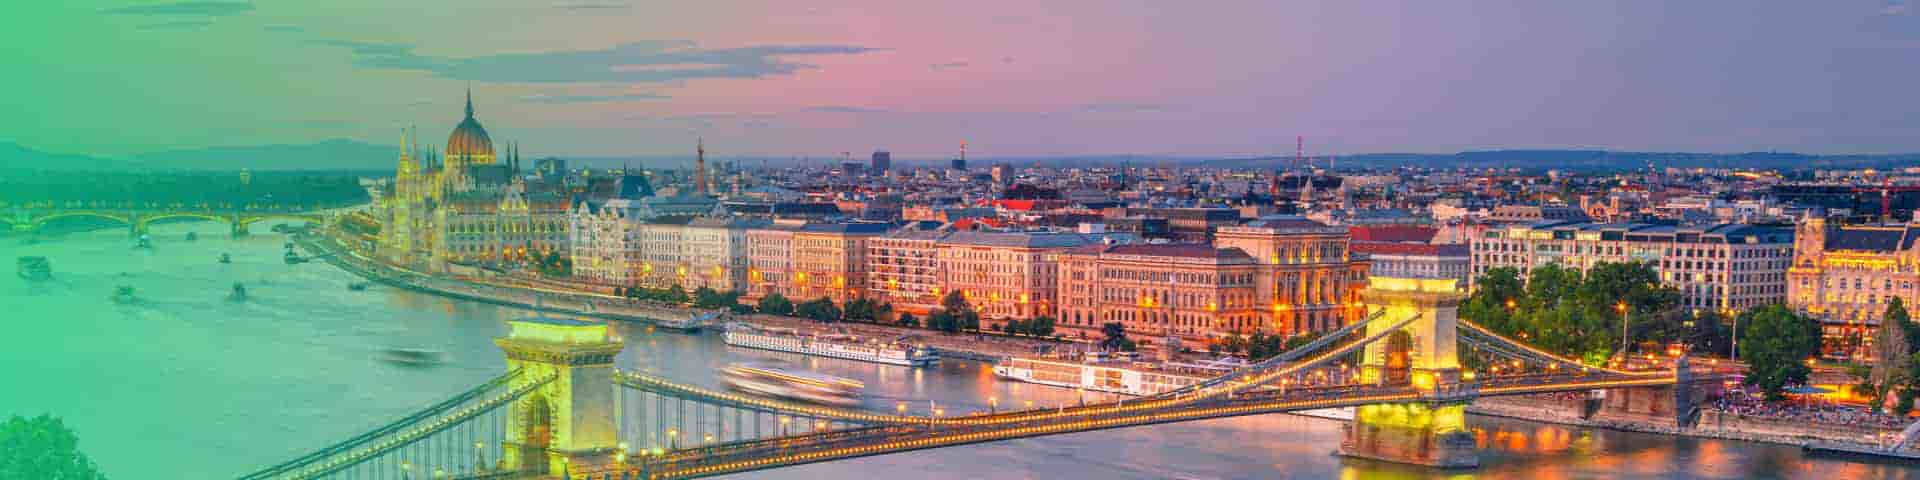 Objavte Maďarsko - to najlepšie miesto k oddychu